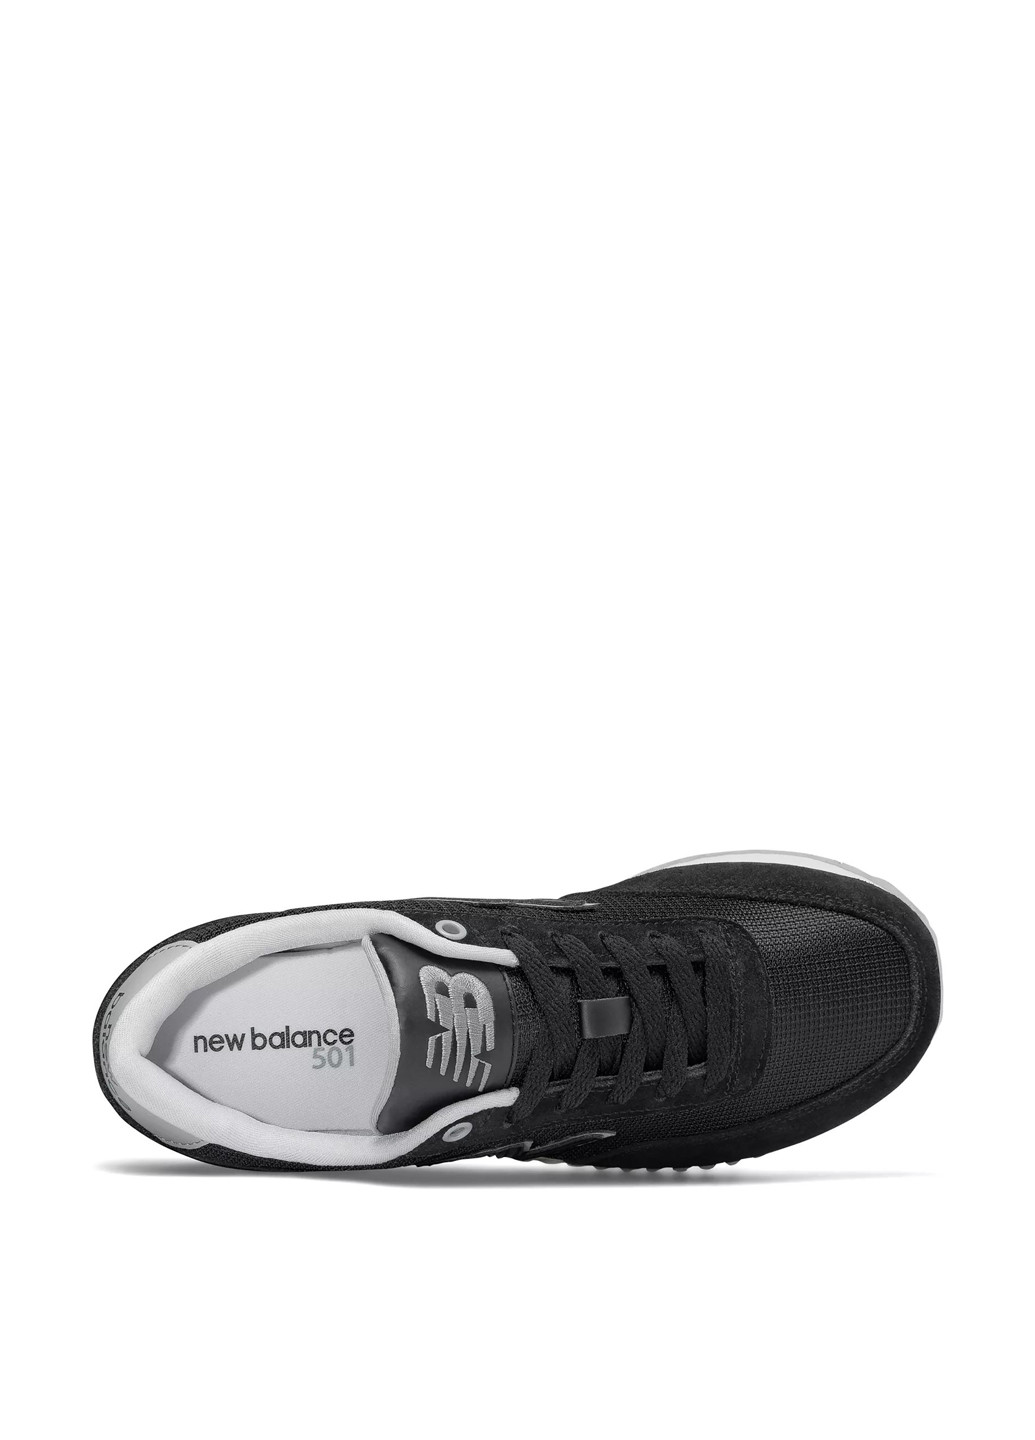 Черные демисезонные кроссовки New Balance 501 Heritage